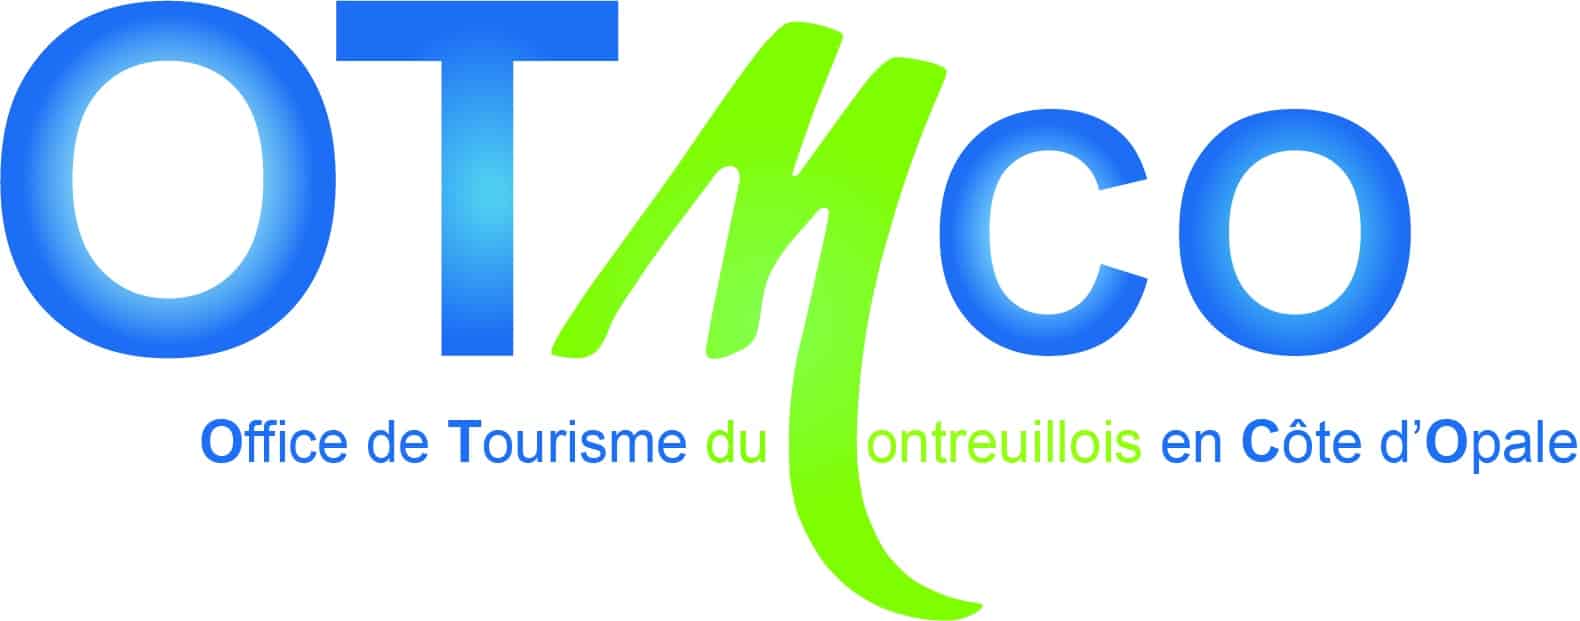 Office de Tourisme du Montreuillois en Côte d'Opale (OTMCO)